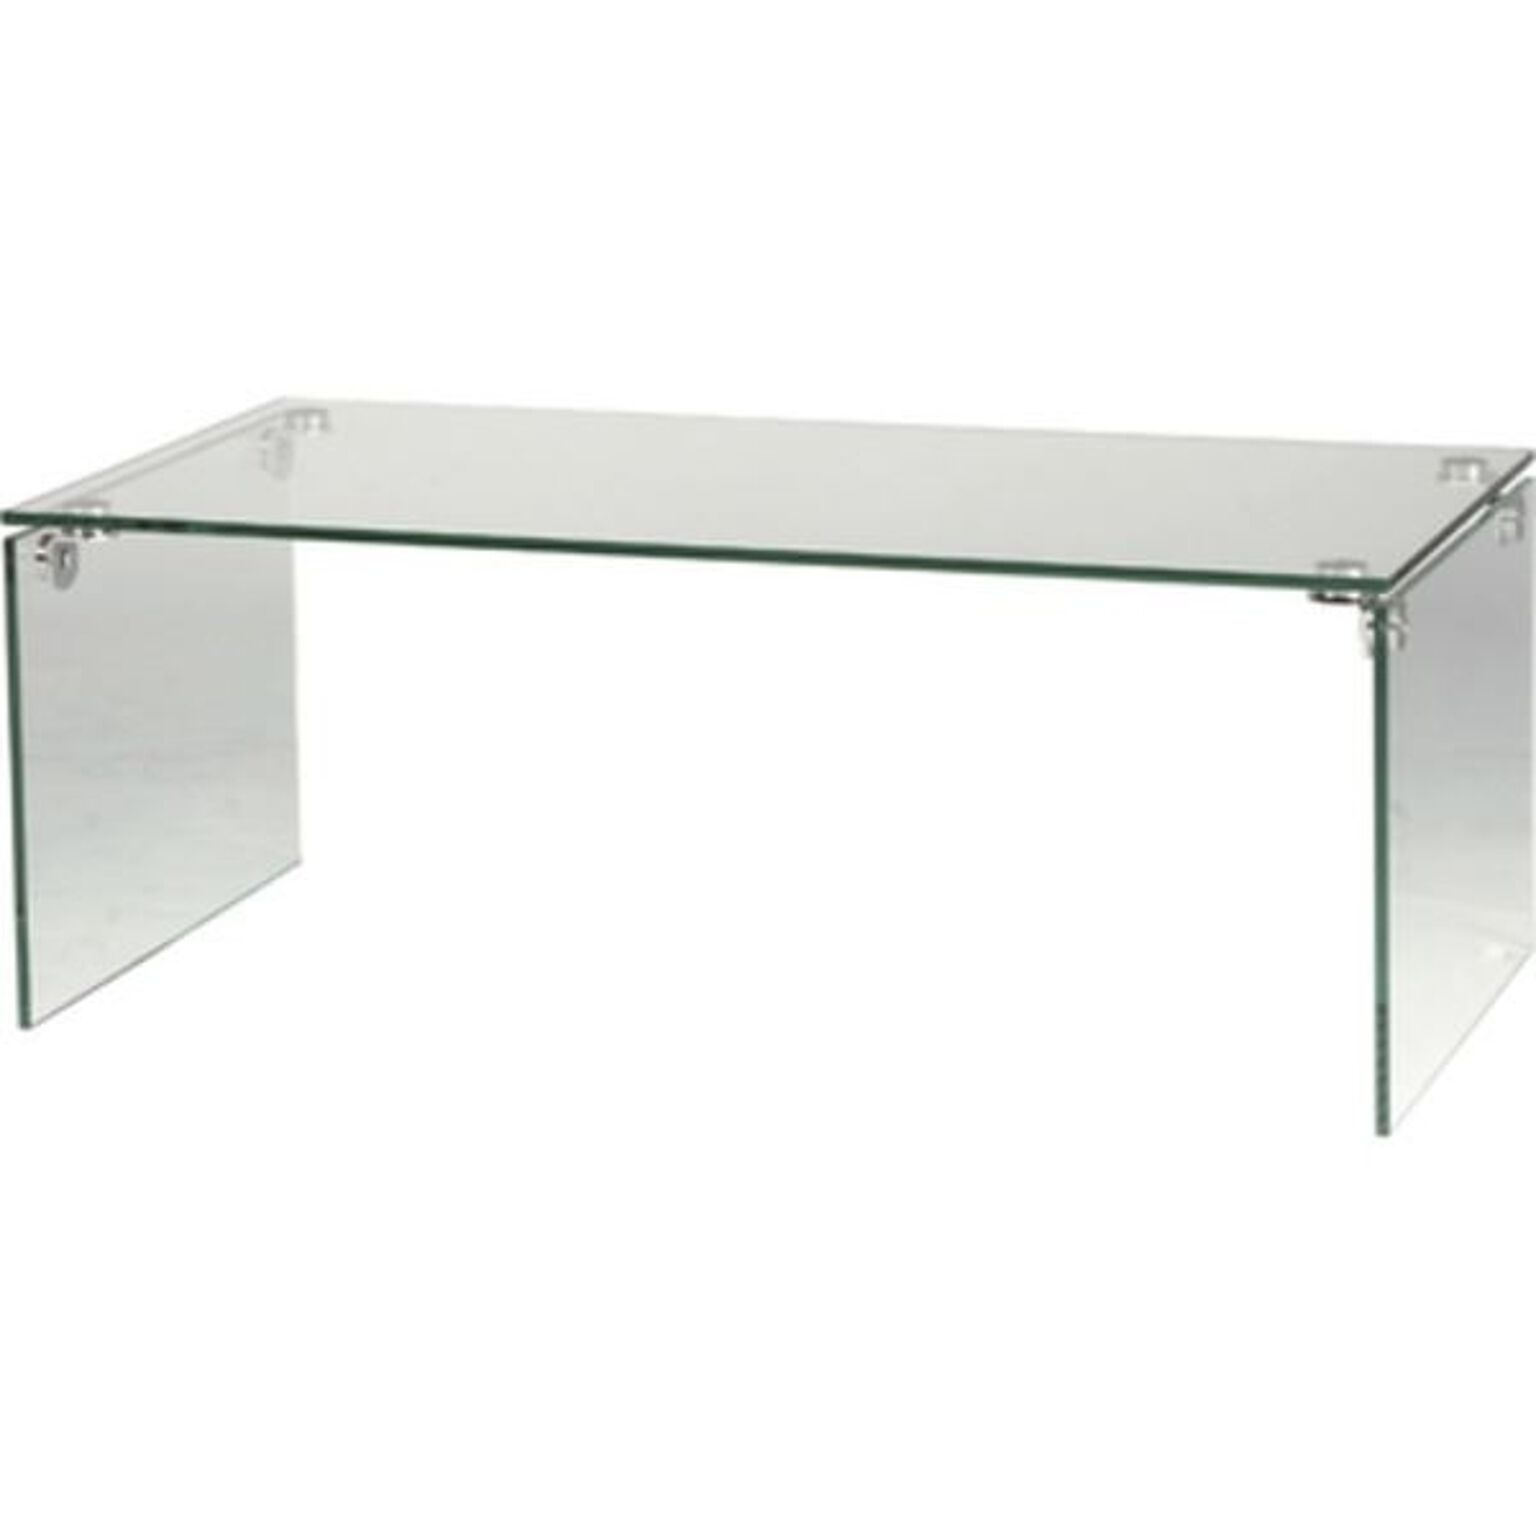 ローテーブル/強化ガラステーブル 長方形 ガラス天板 (リビング家具) PT-26